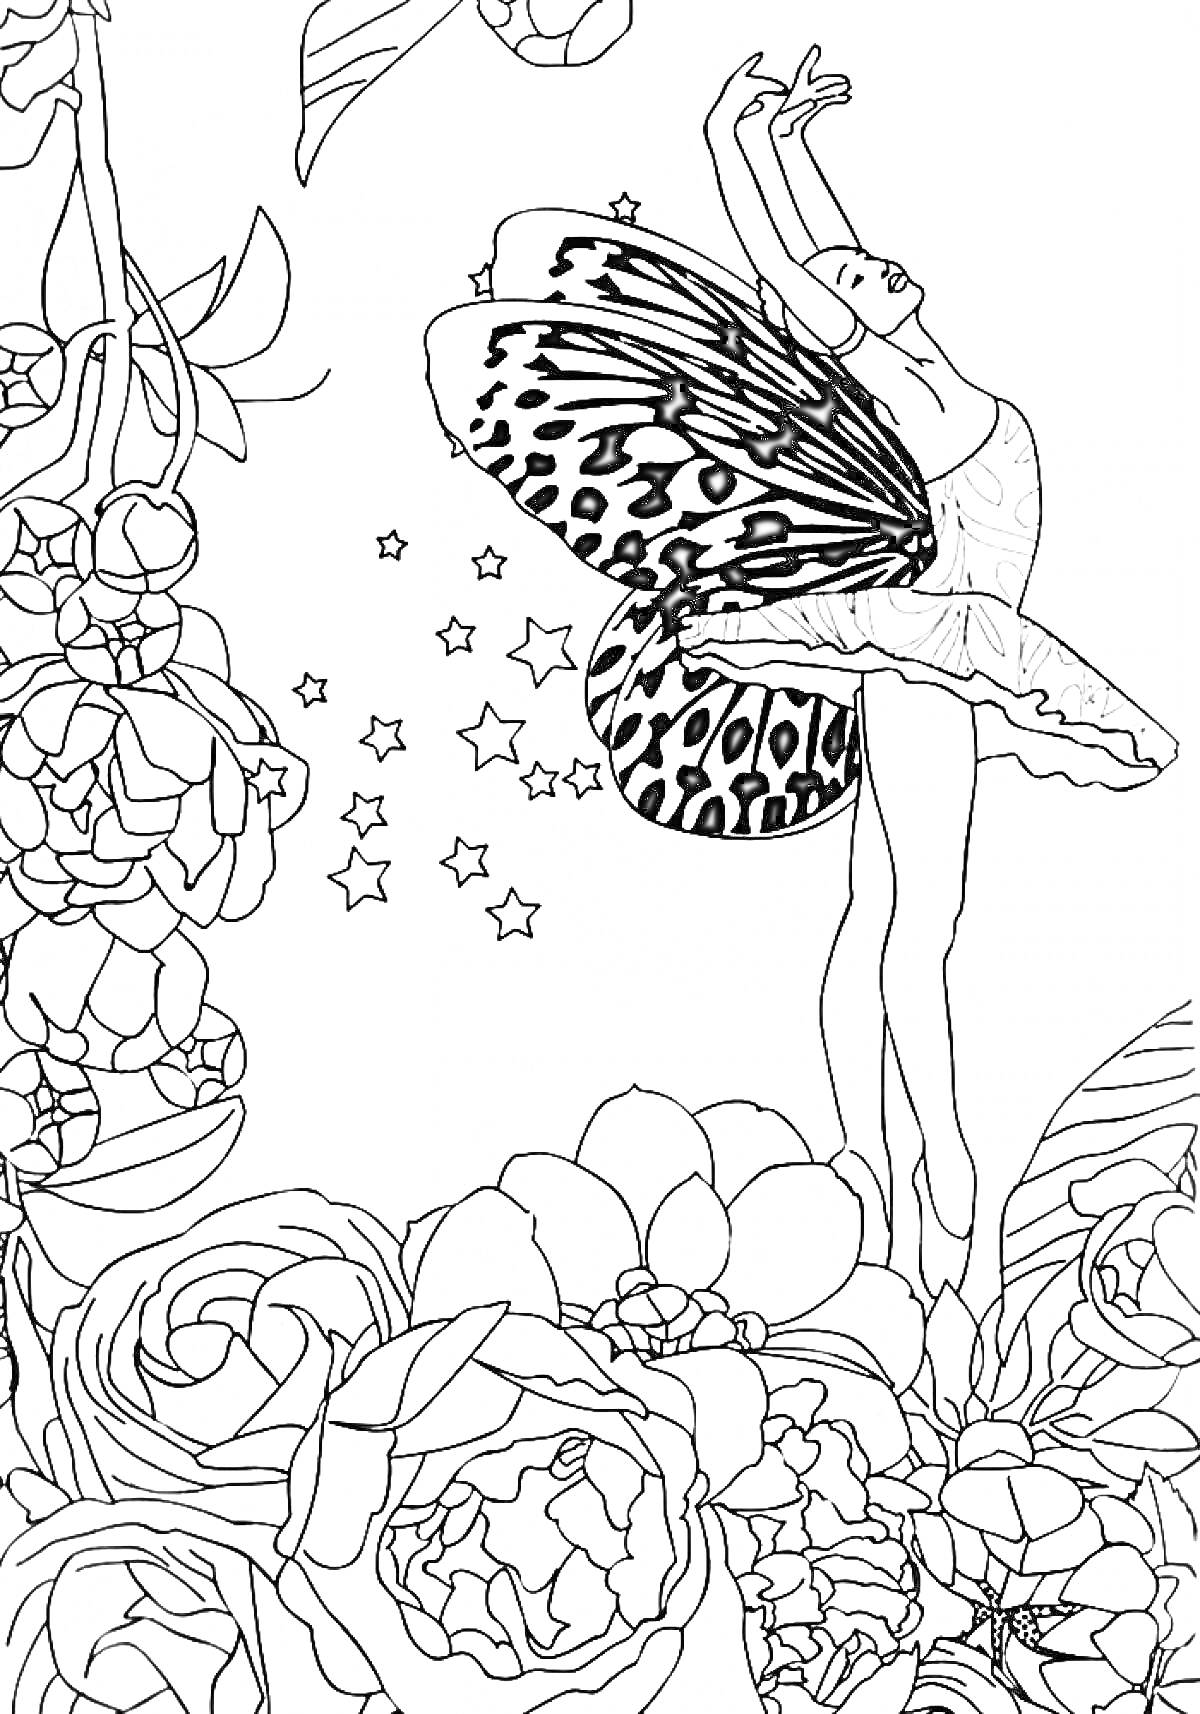 Балерина с крыльями бабочки среди цветов и звезд